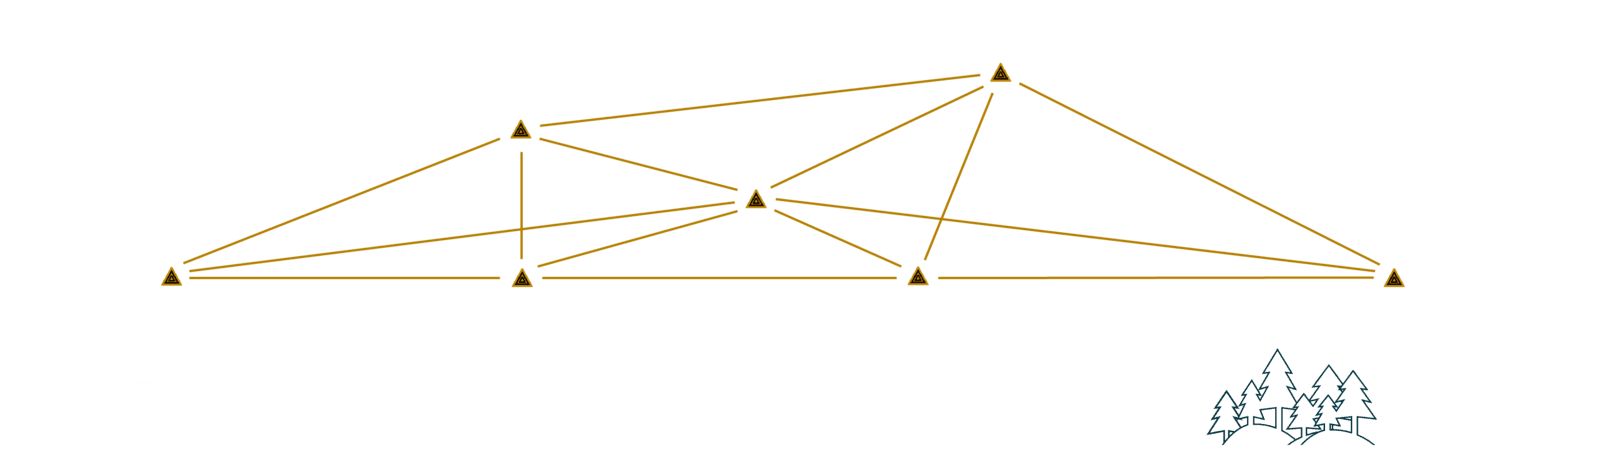 Notfall-Kommunikationsnetz zur Vernetzung mehrerer Standorte und Domänen